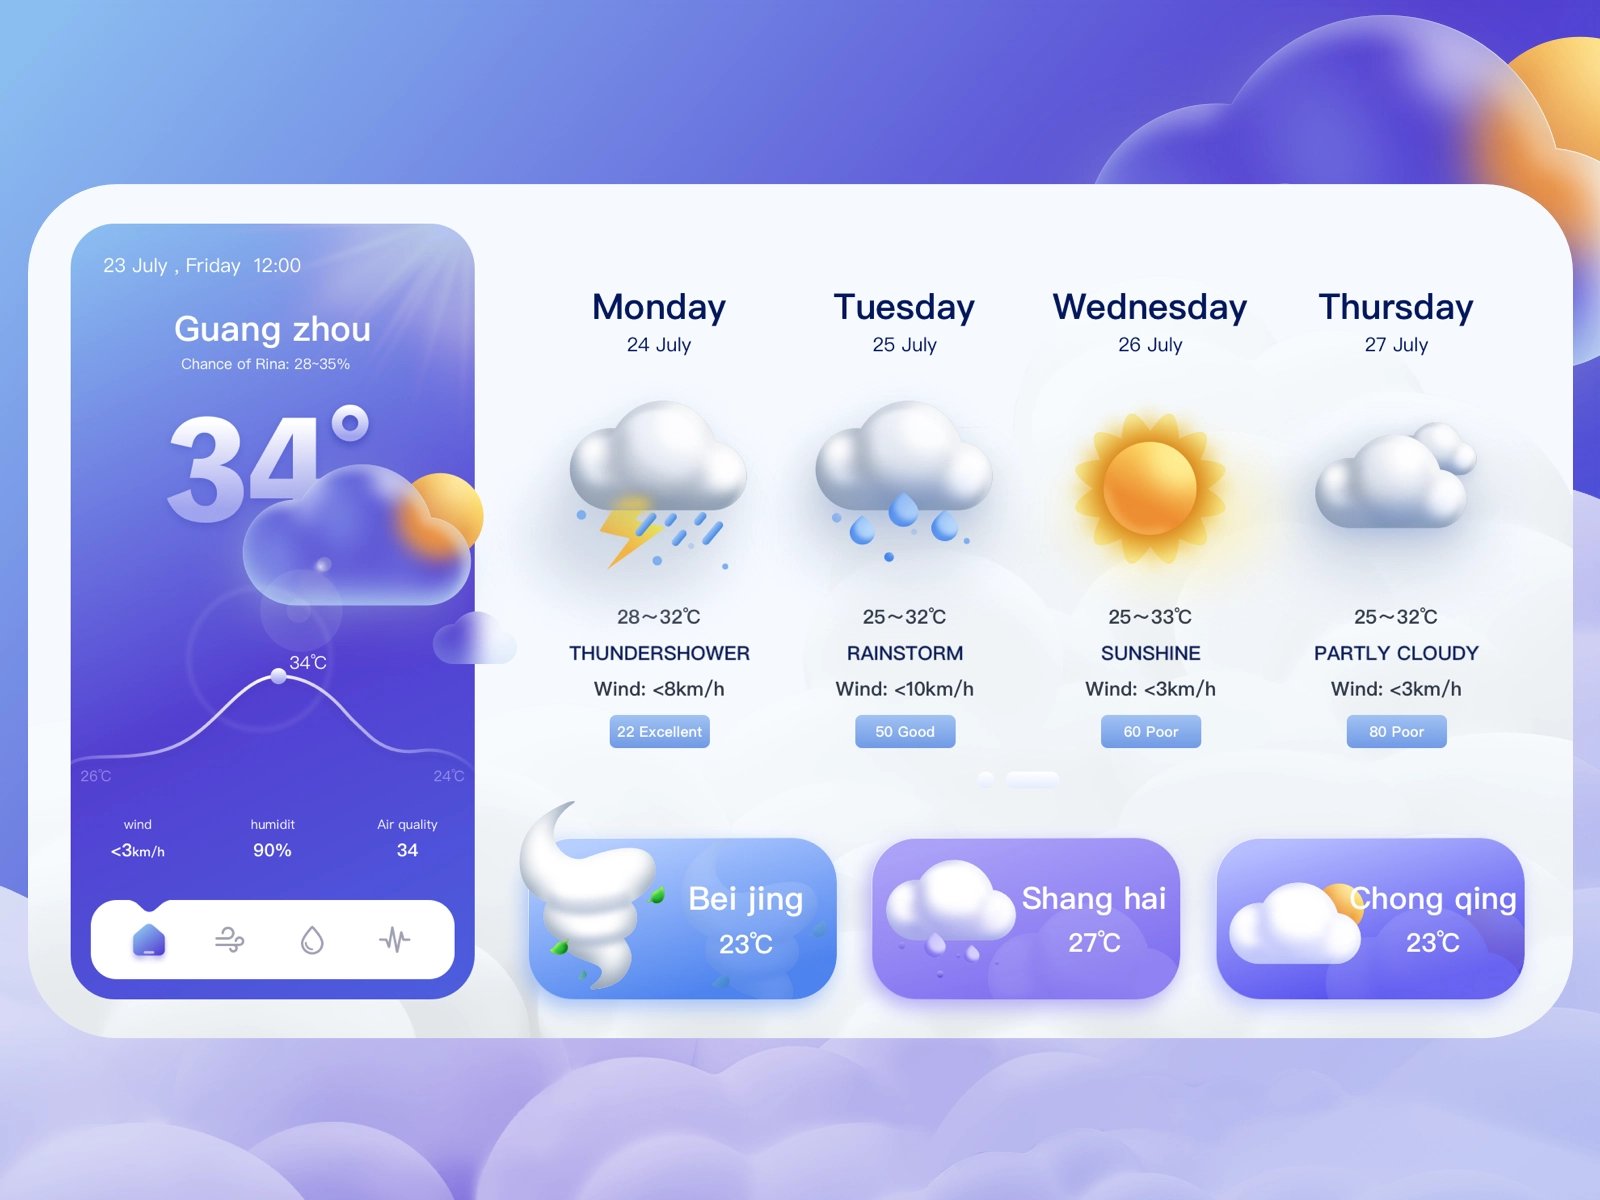 事先预估！12组天气预报WEB网页设计灵感